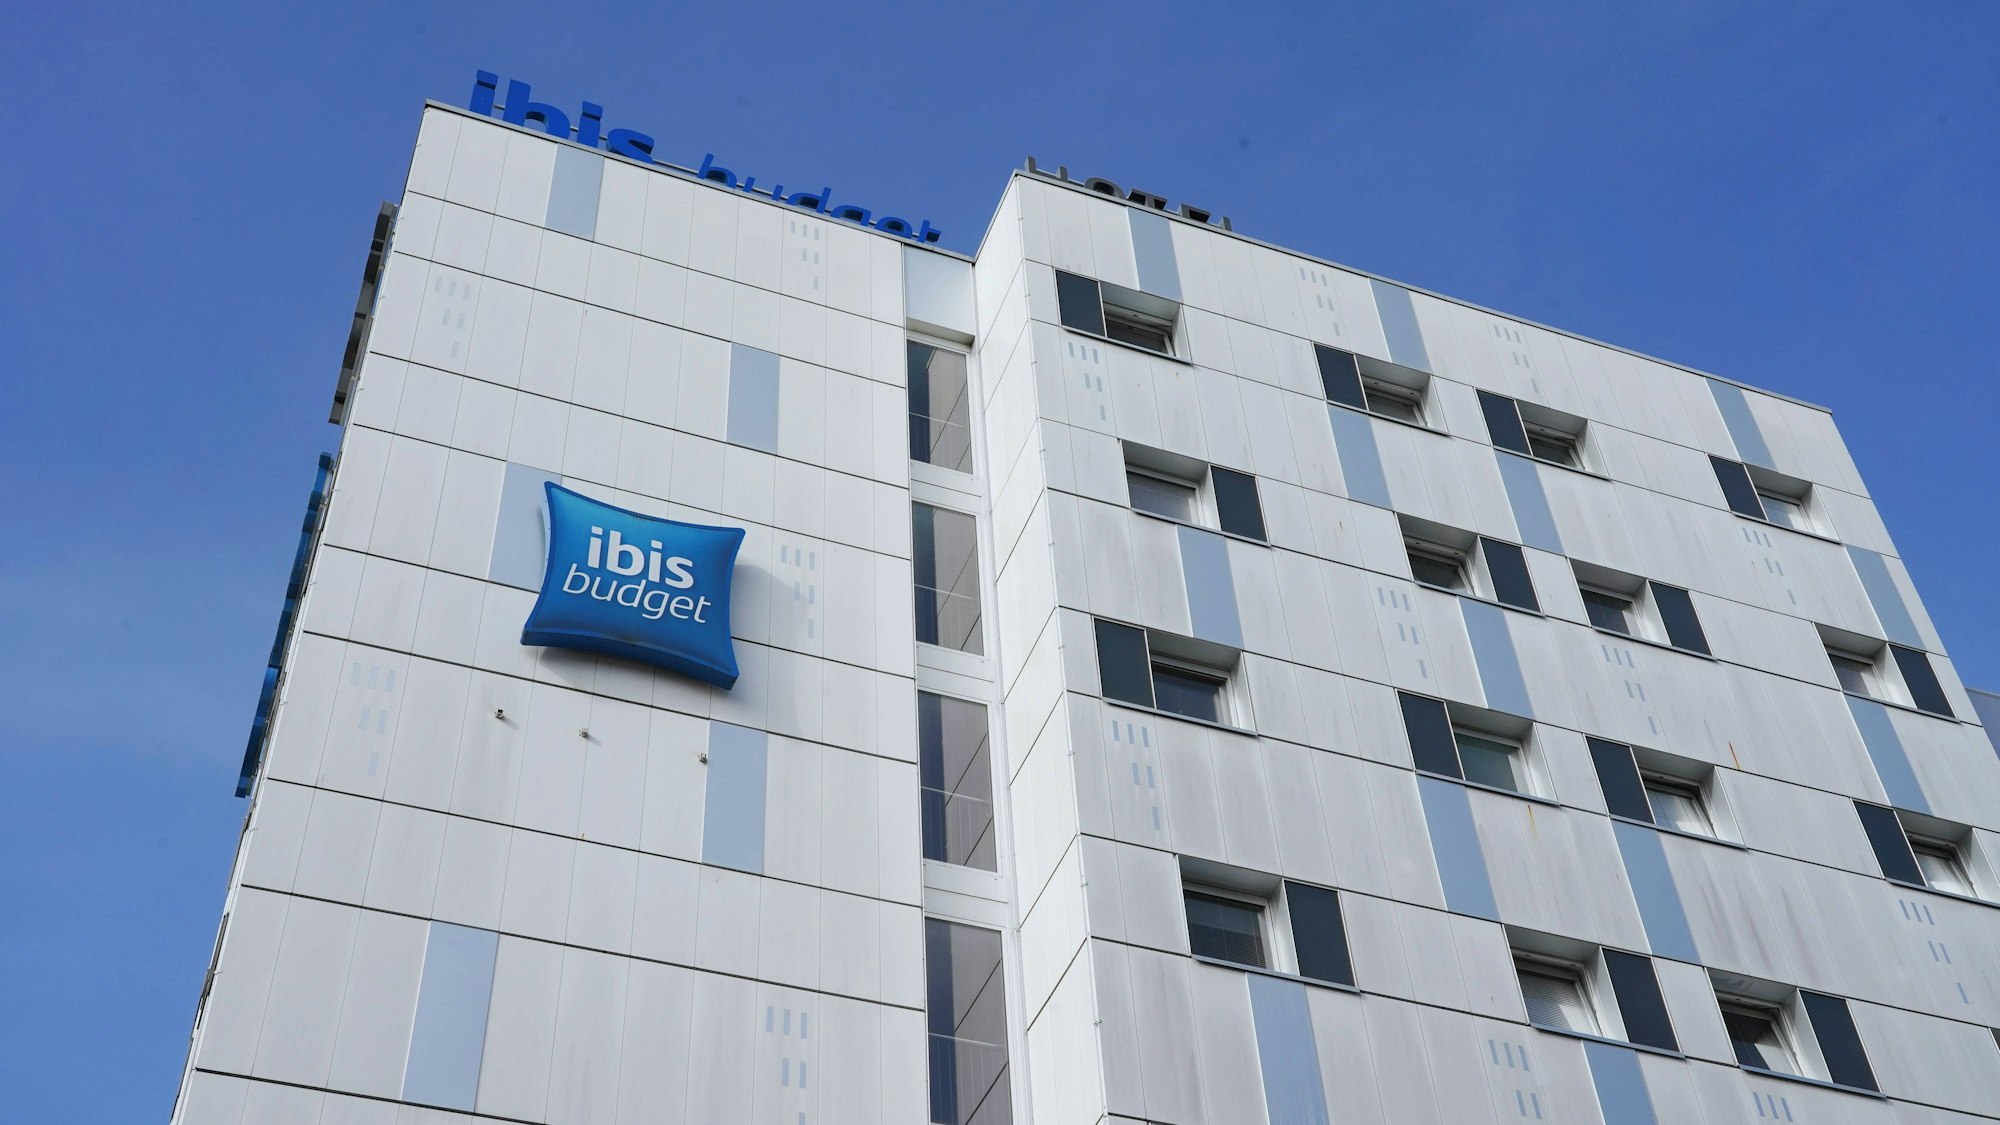 Fassade eines Hotels der Kette „Ibis Budget“.